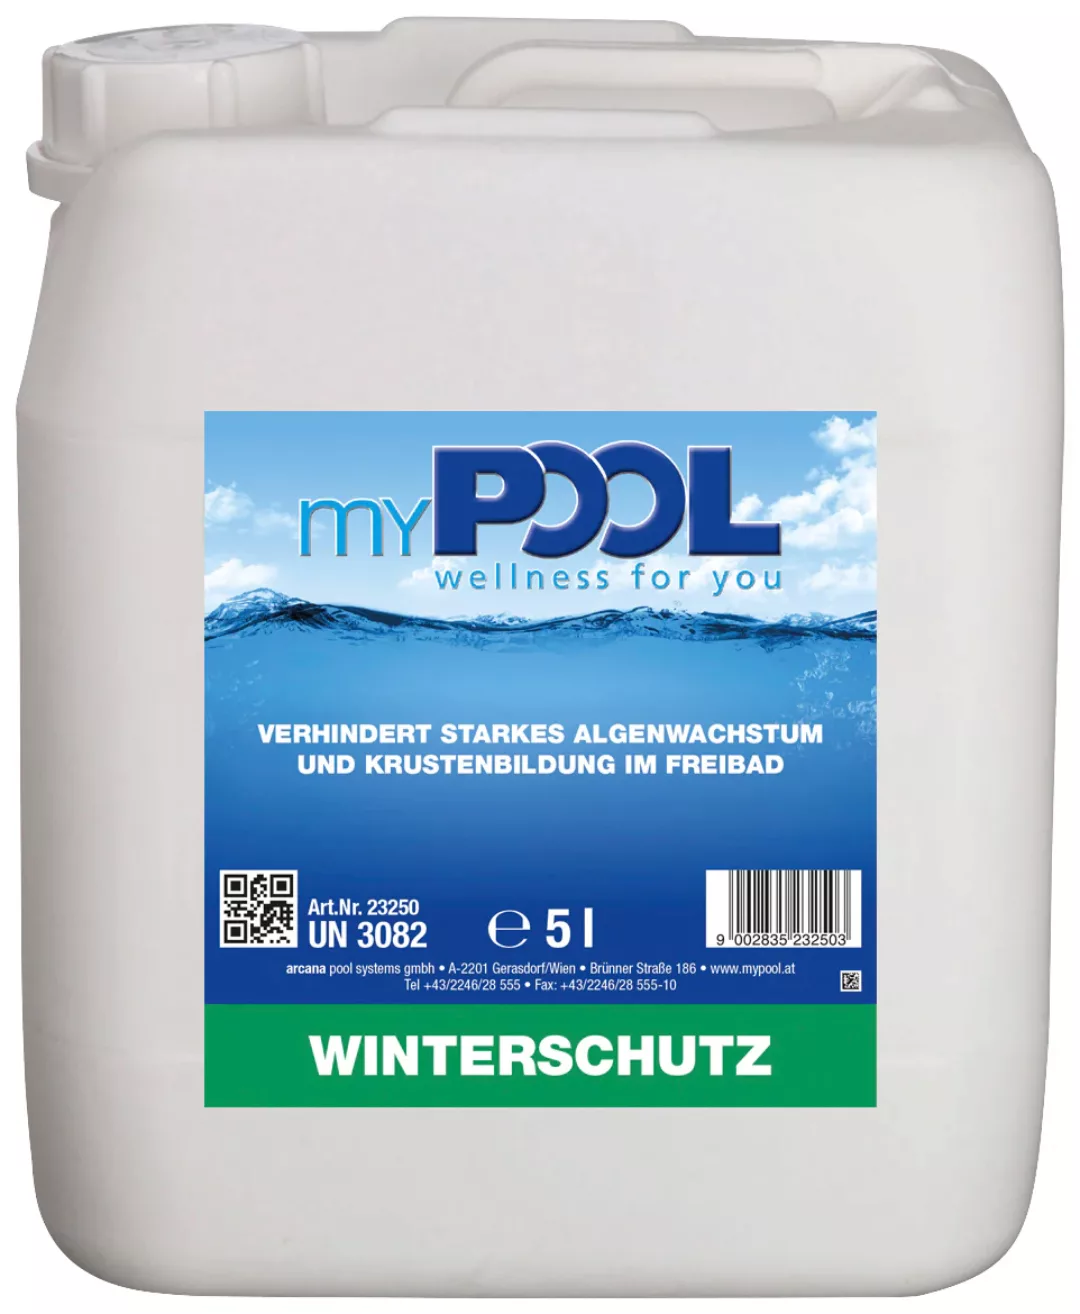 my POOL BWT Poolpflege "Winterschutz" günstig online kaufen